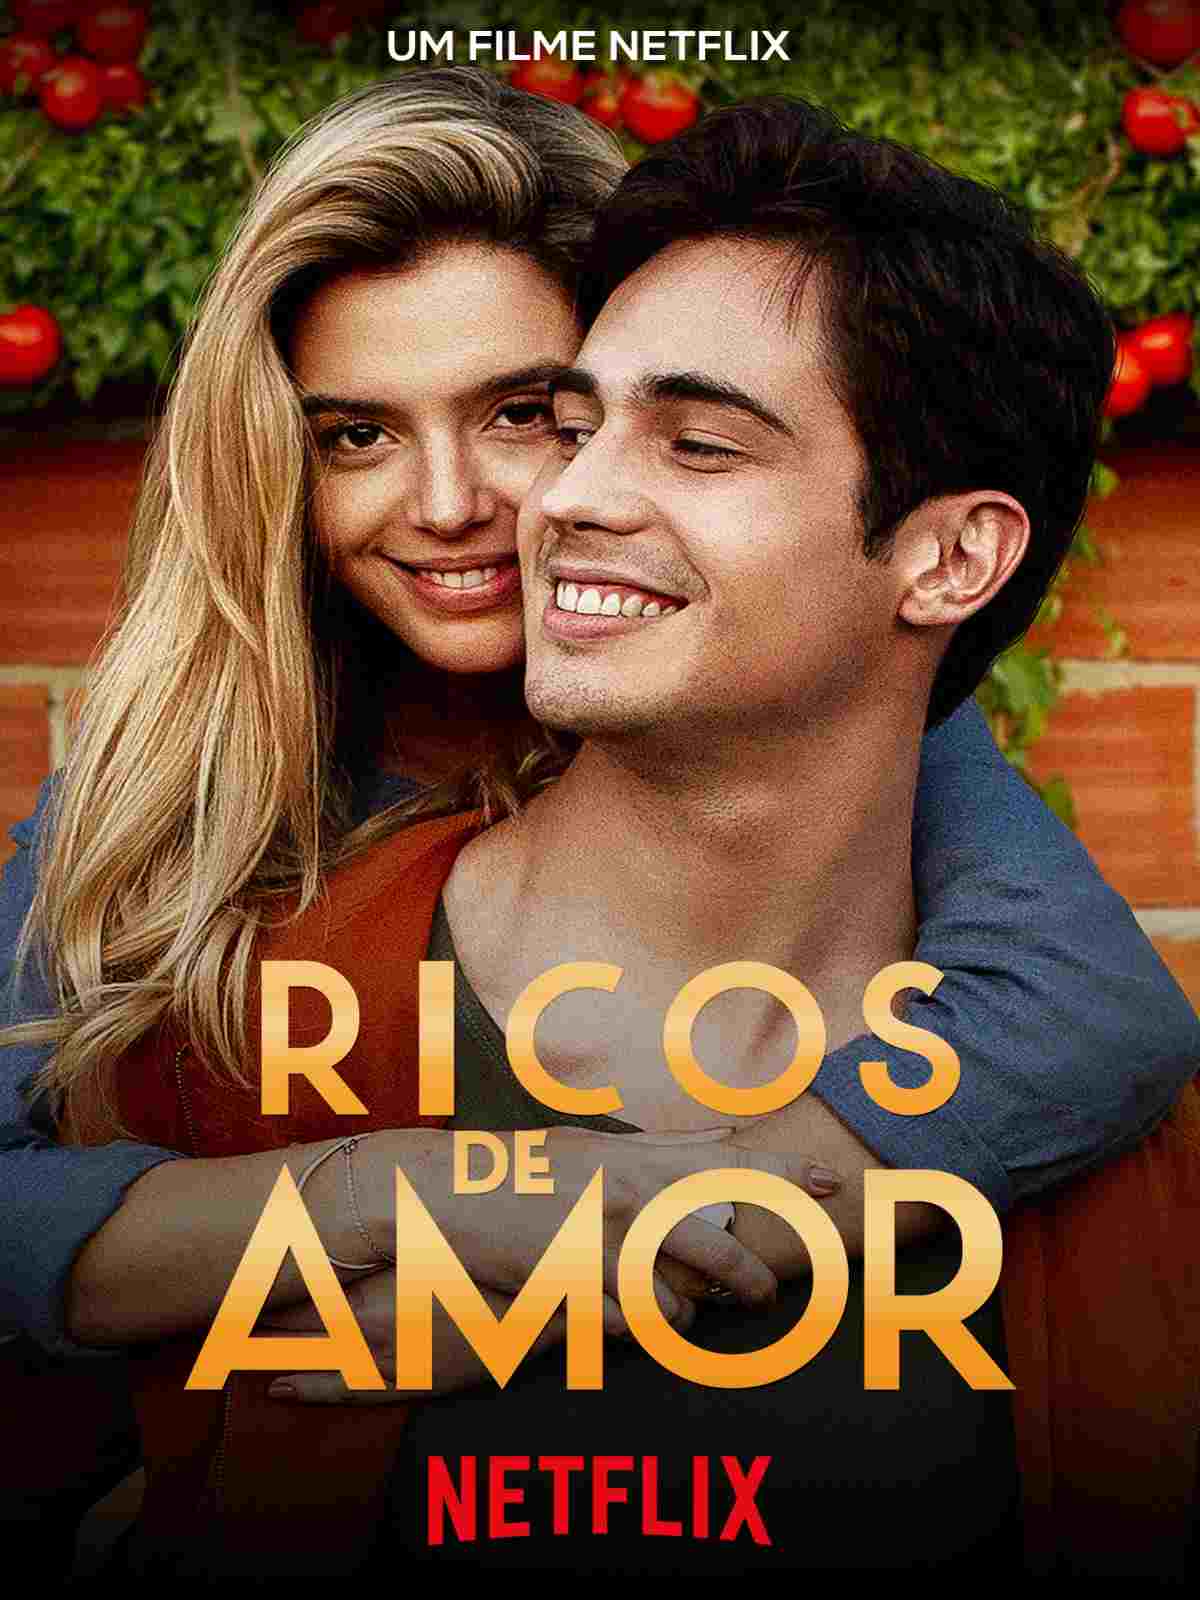 Ricos de amor, um filme Netflix que vale a pena assistir!